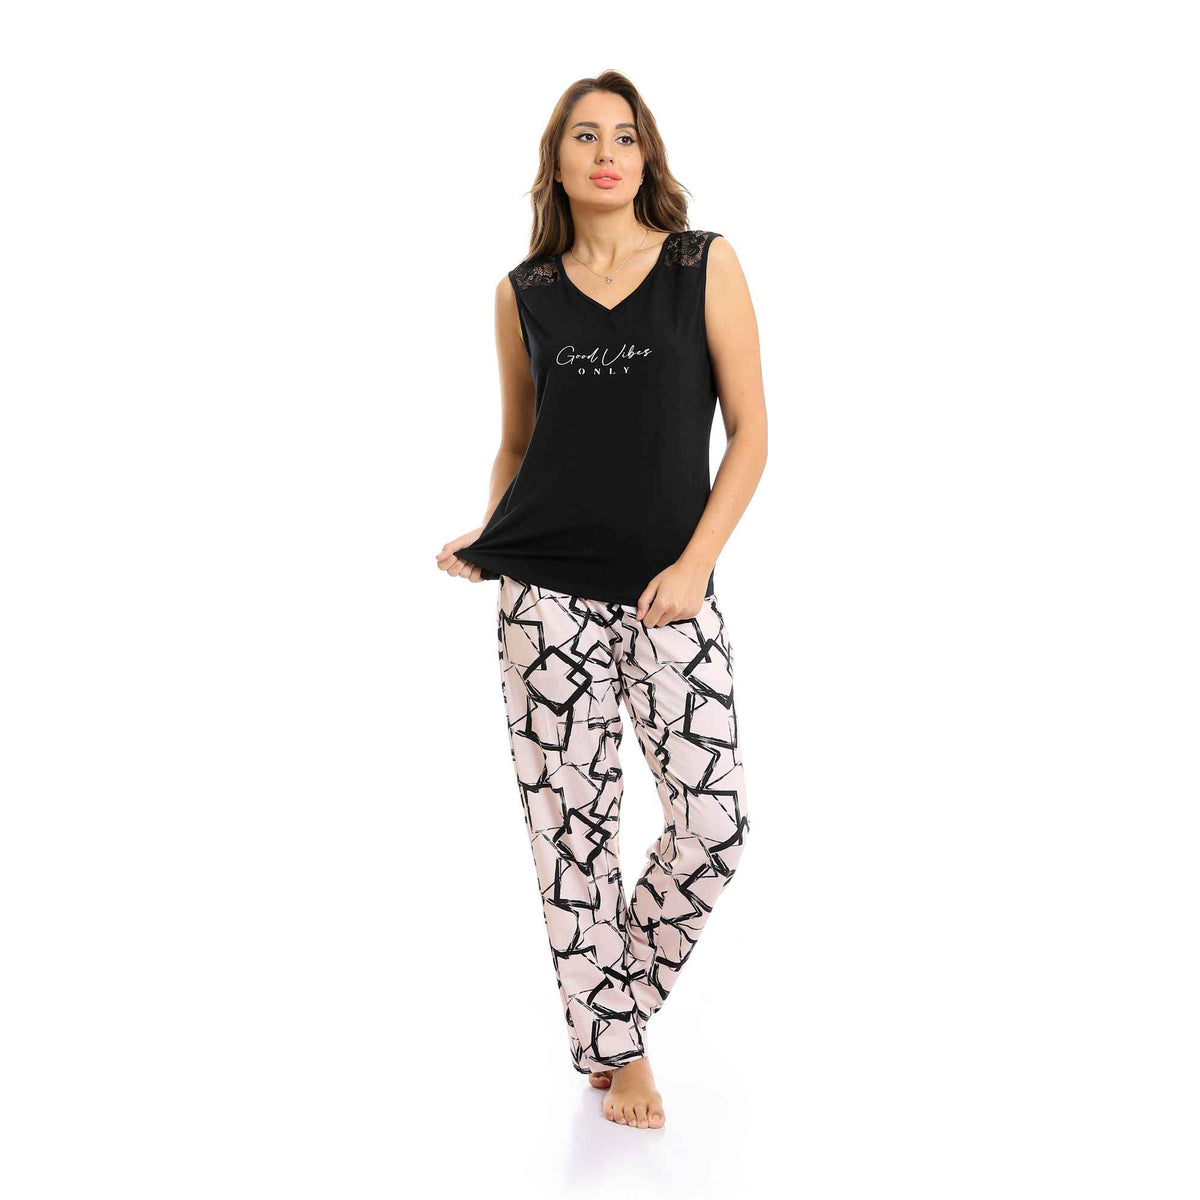 "Good Vibes" V-Neck Top & Patterned Pants Pajama Set - Black & Beige